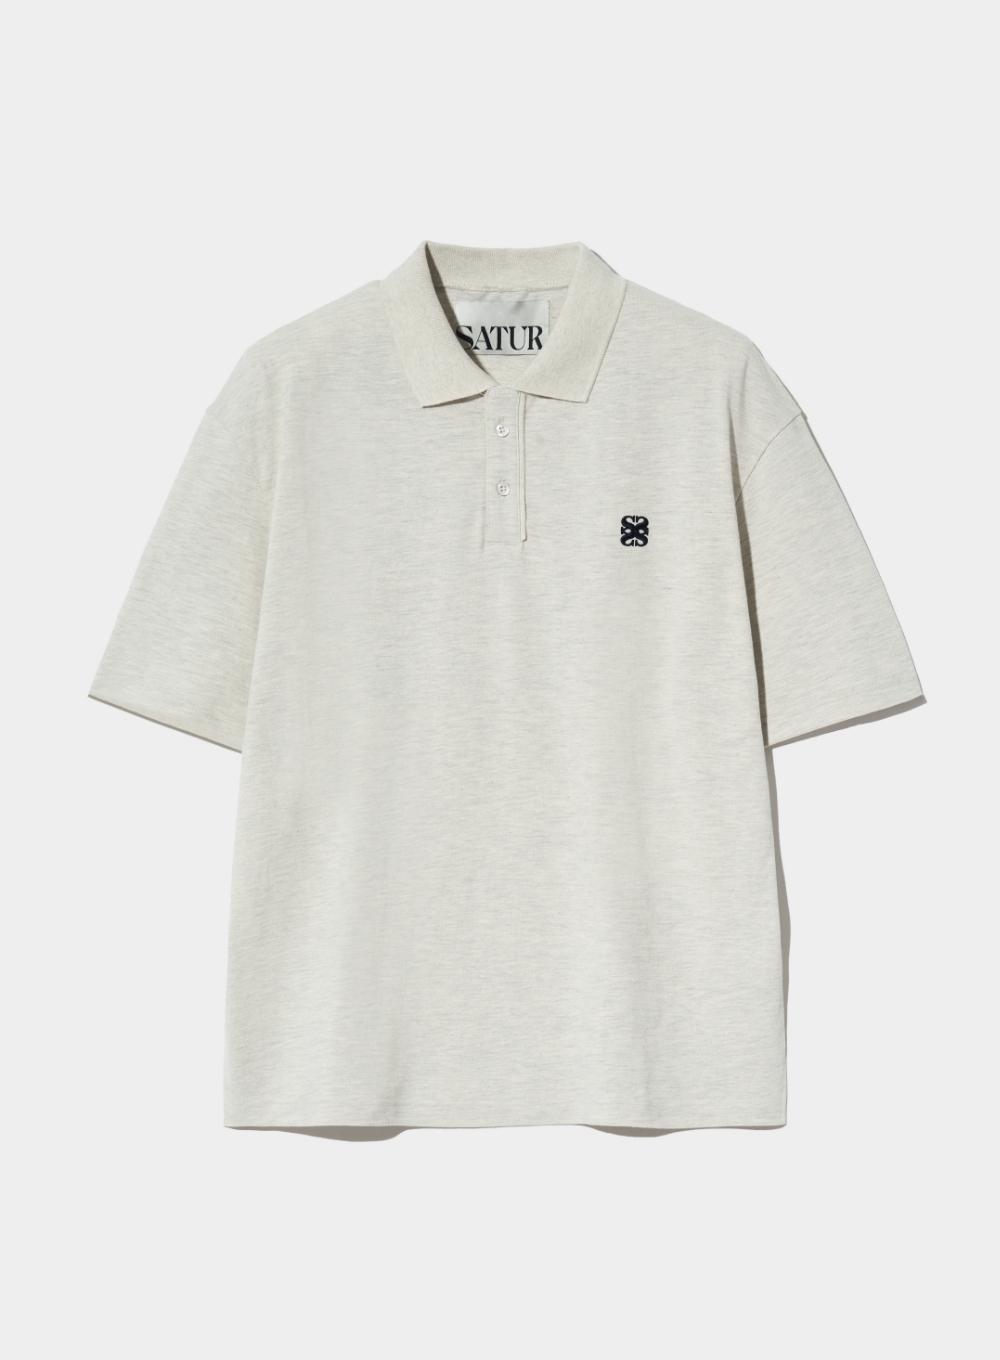 [7월 26일 예약배송] Basic Pique Polo T-Shirt - Melange Ivory